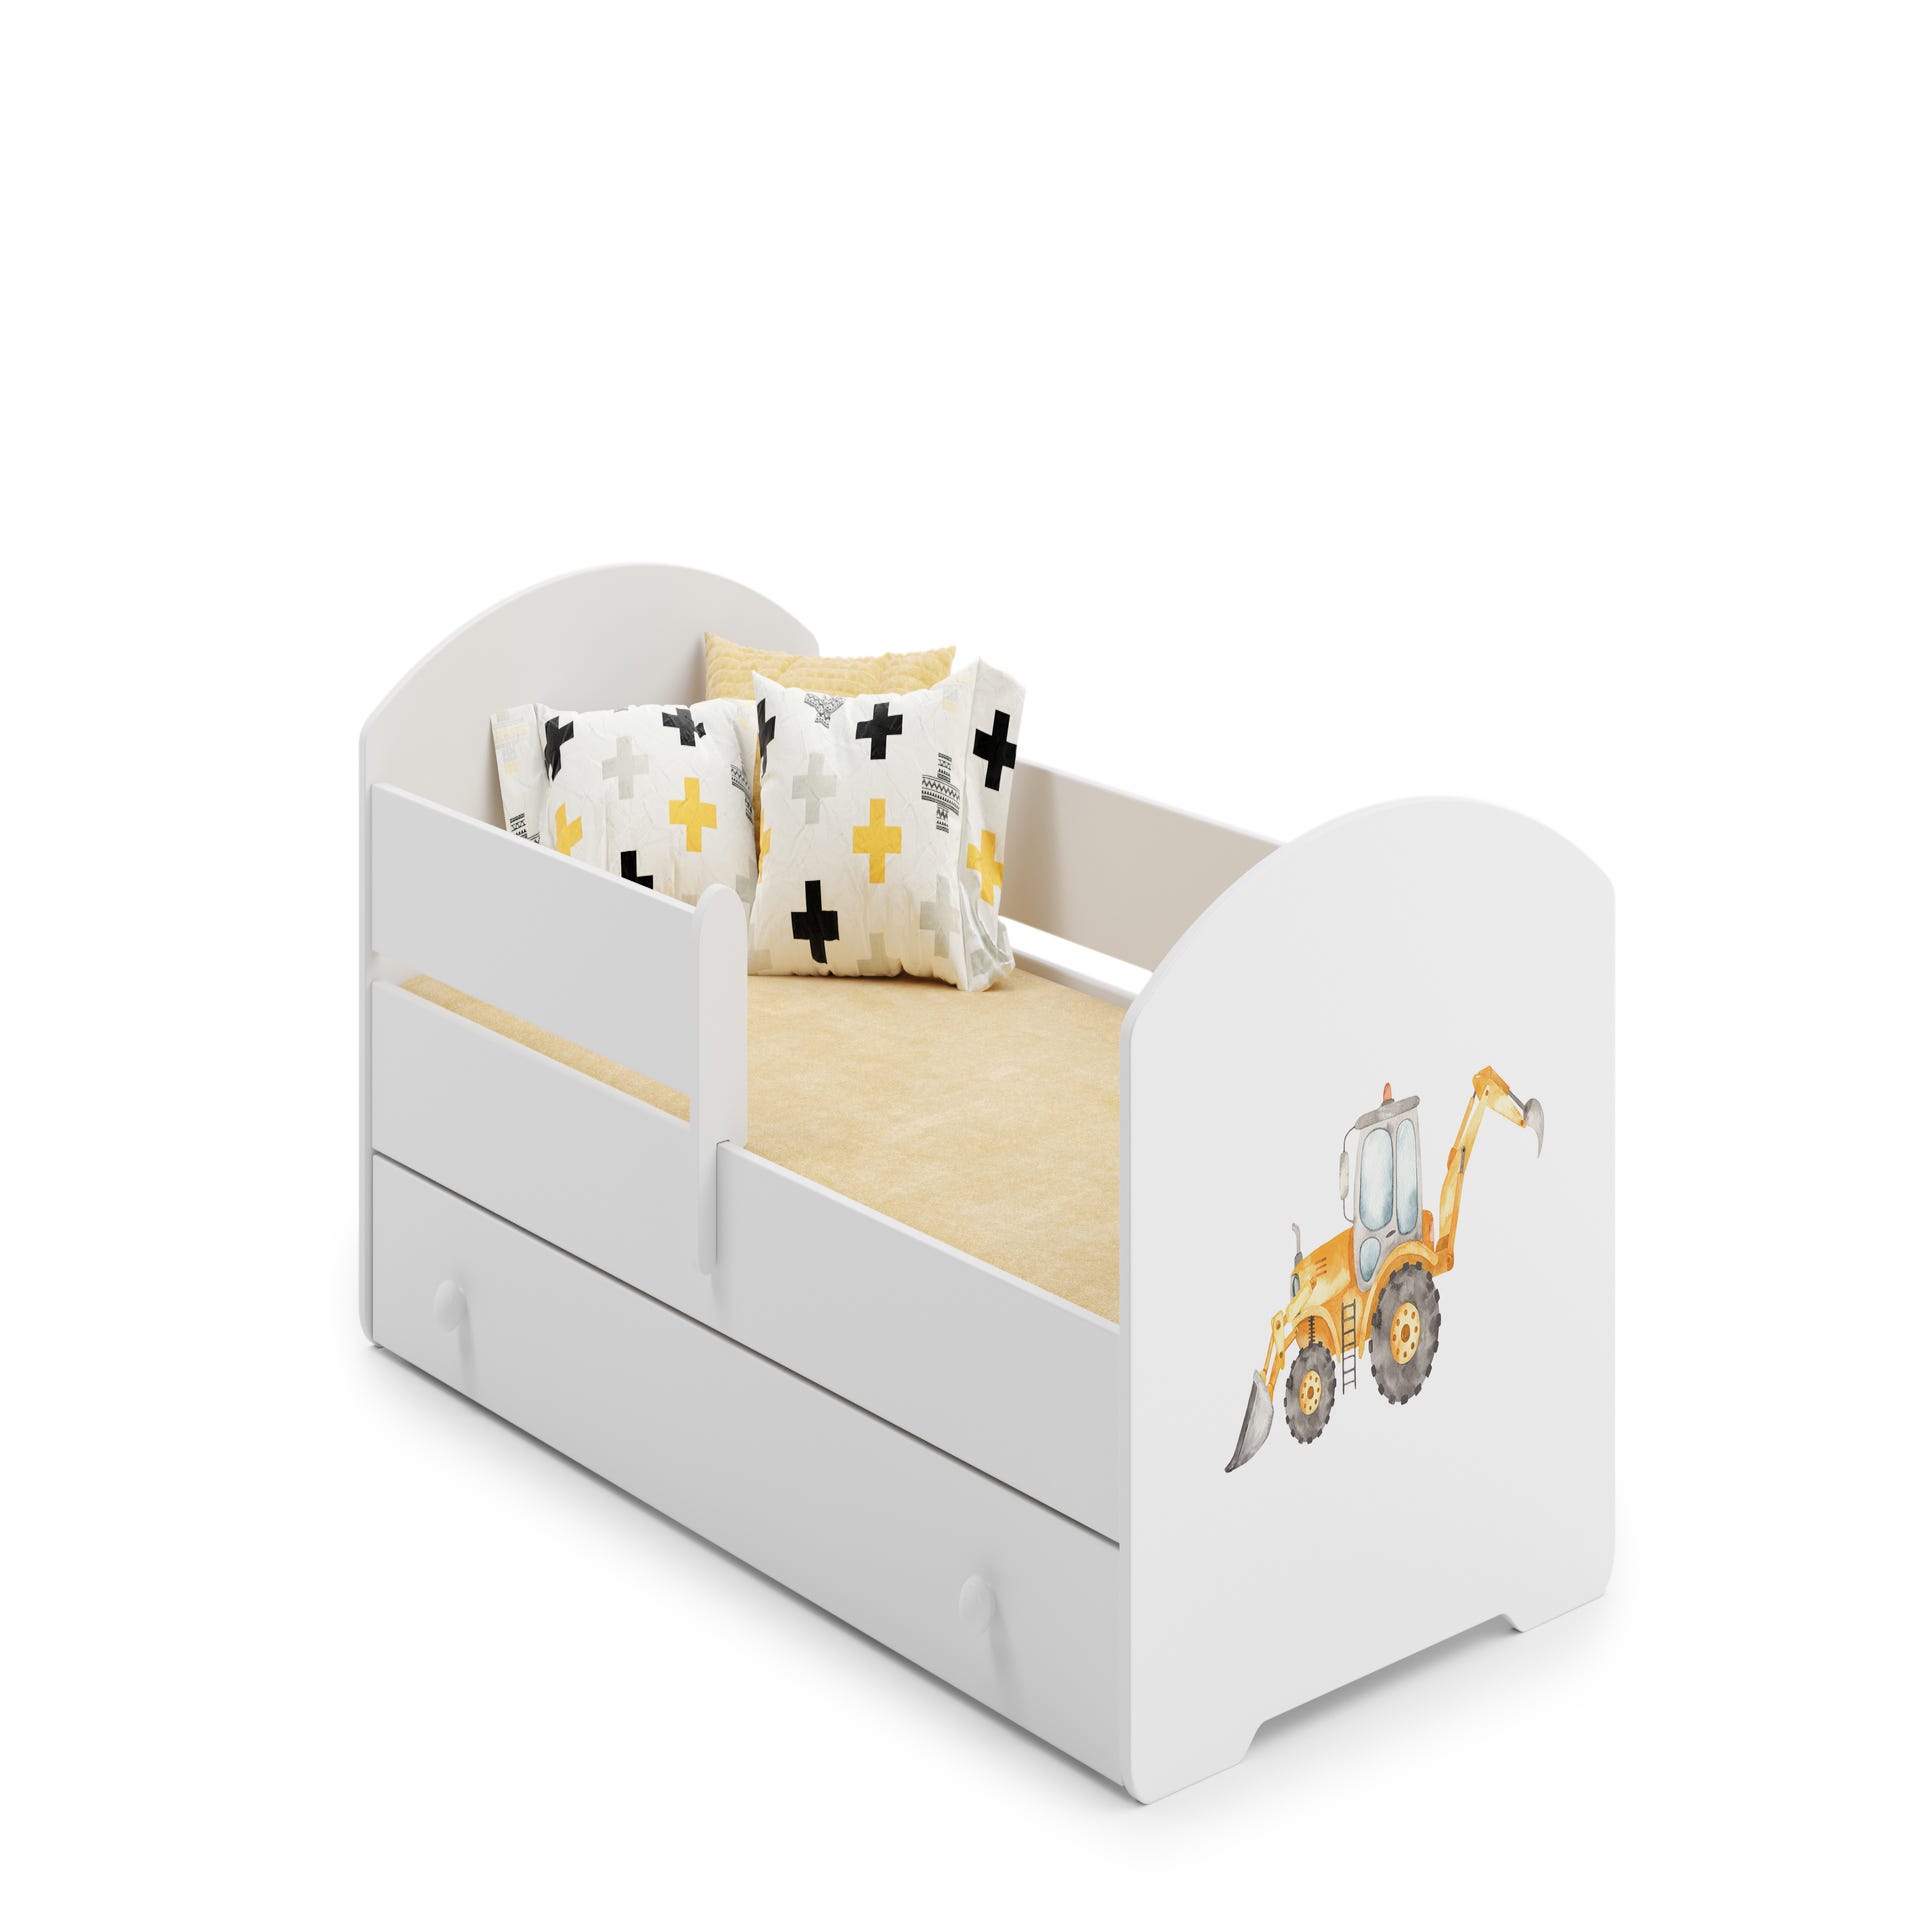 Luk - letto singolo 160x80 con grafica per bambini, in un set con cassetto,  ringhiera, materasso e telaio